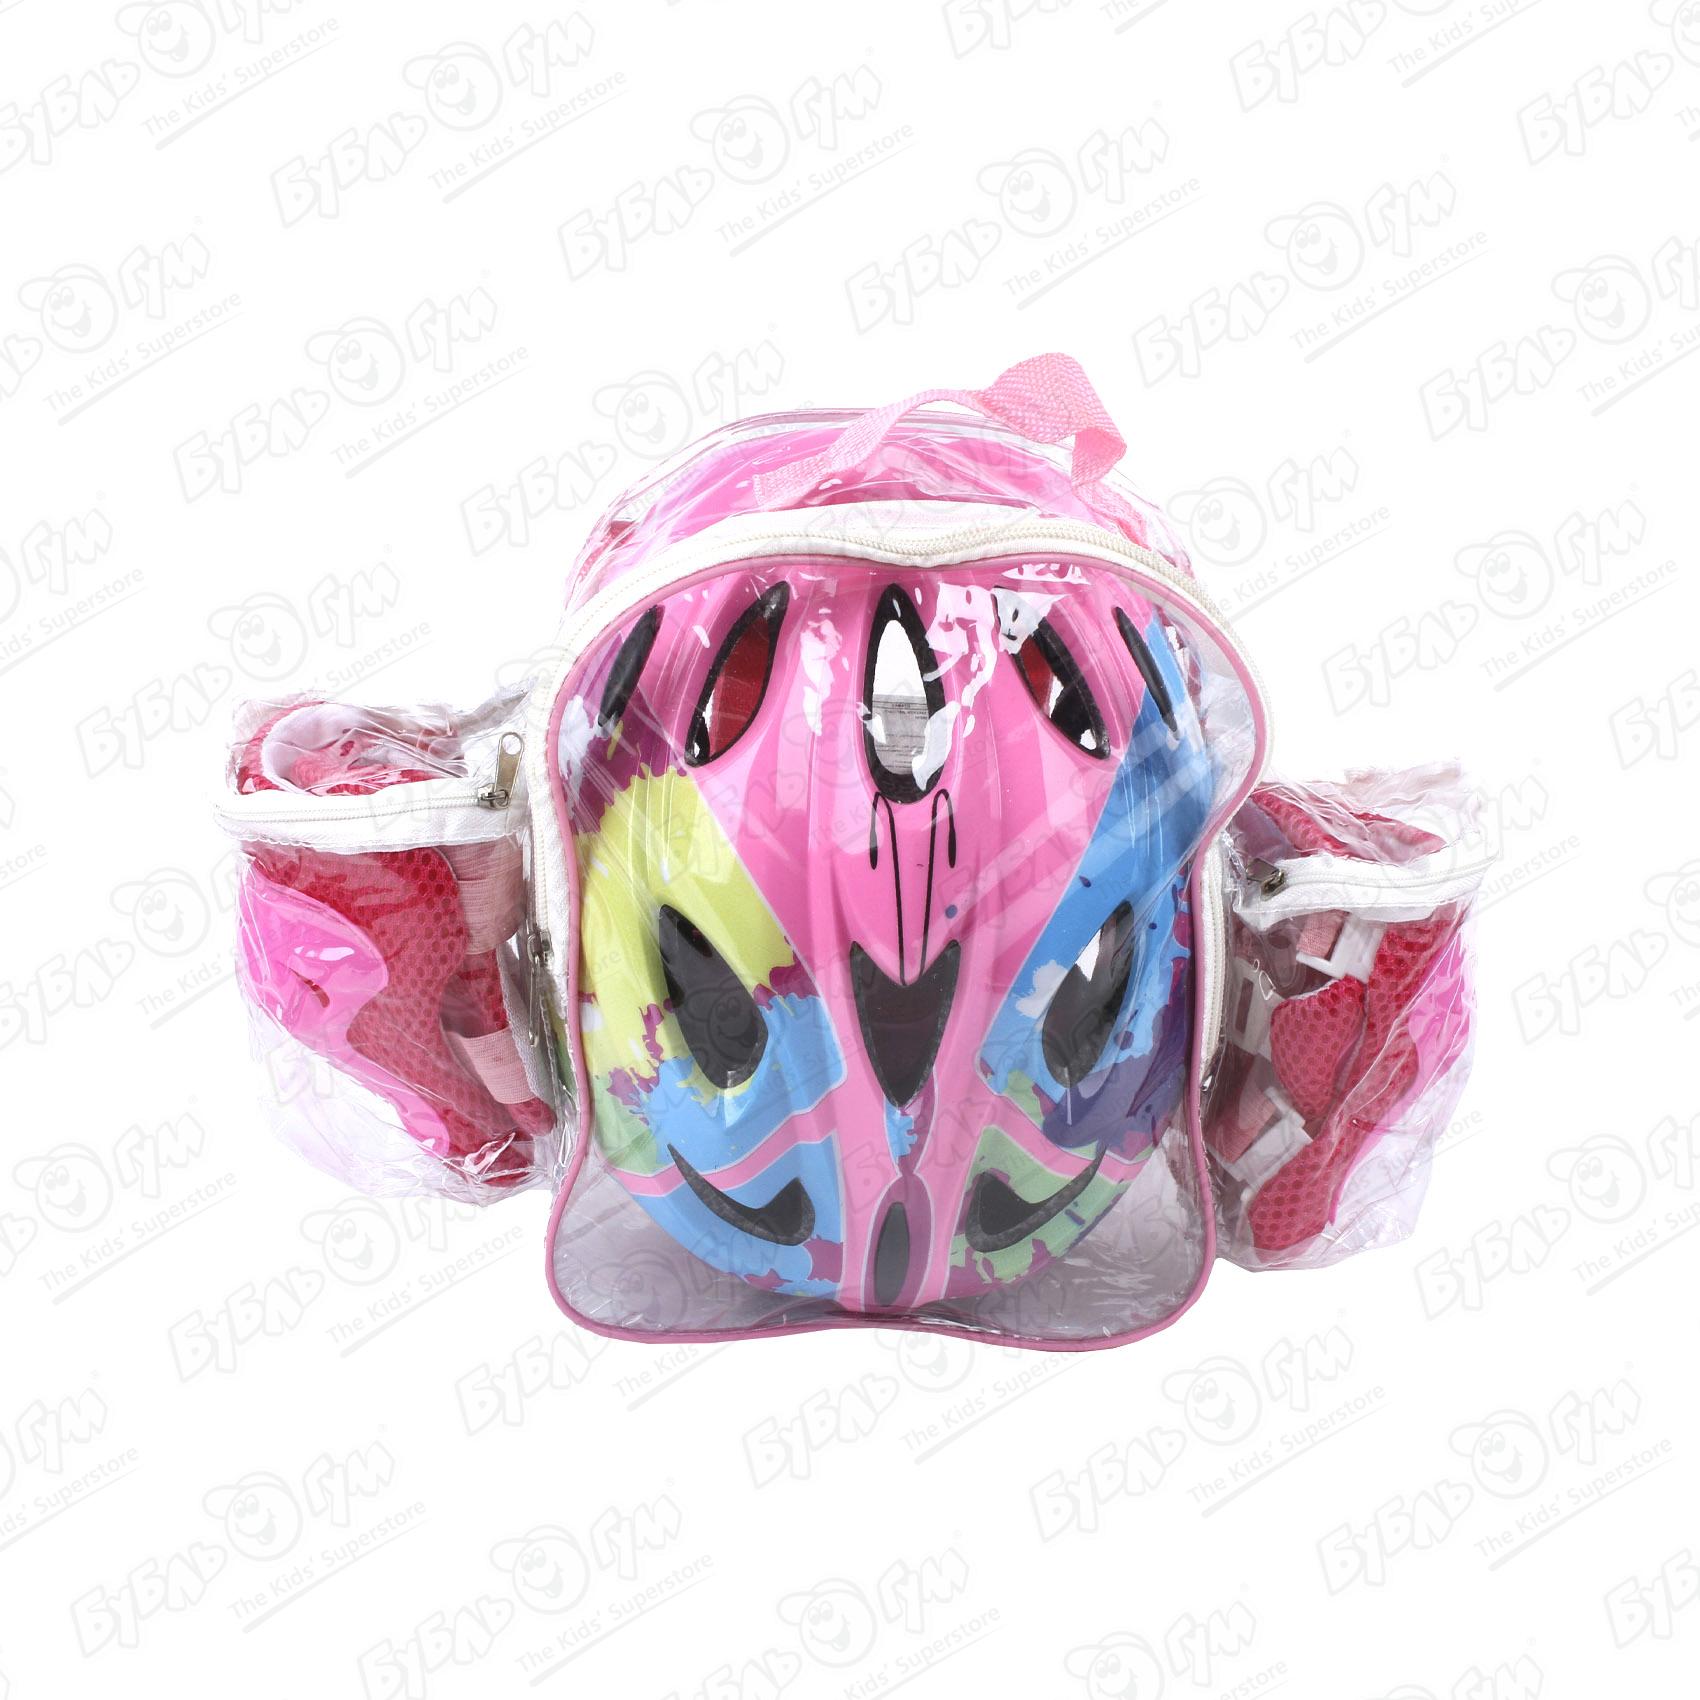 Комплект защиты ROLLO PRO наколенники защита для рук и шлем в рюкзаке розовый 51-54см комплект защиты компания друзей налокотники наколенники полуперчатки jb0208466